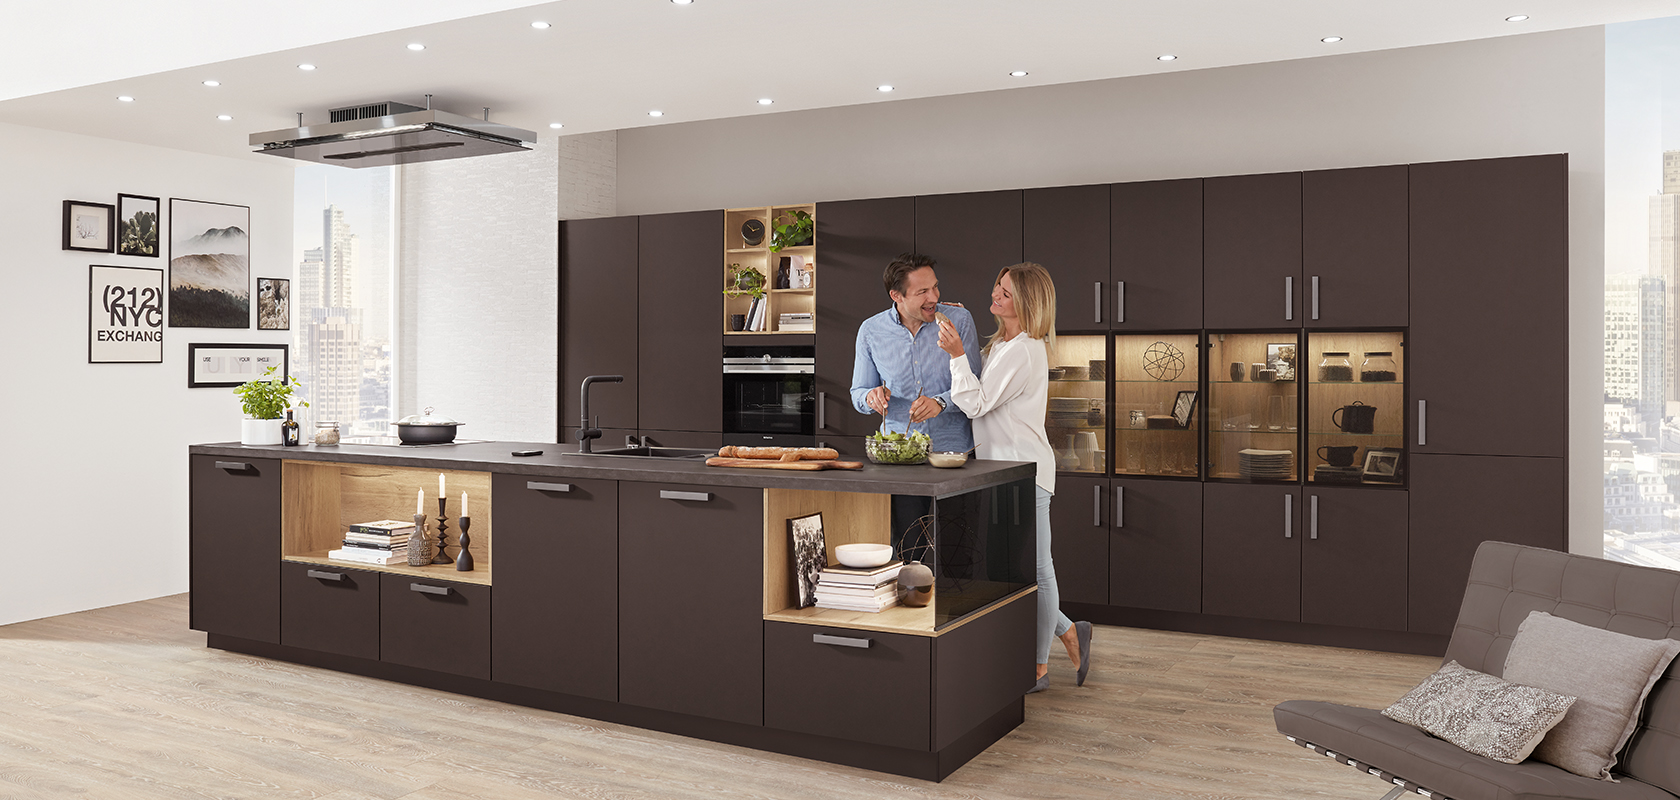 Une cuisine moderne avec un couple cuisinant ensemble, comprenant des armoires sombres élégantes, des appareils intégrés et un îlot spacieux avec un agencement à concept ouvert.